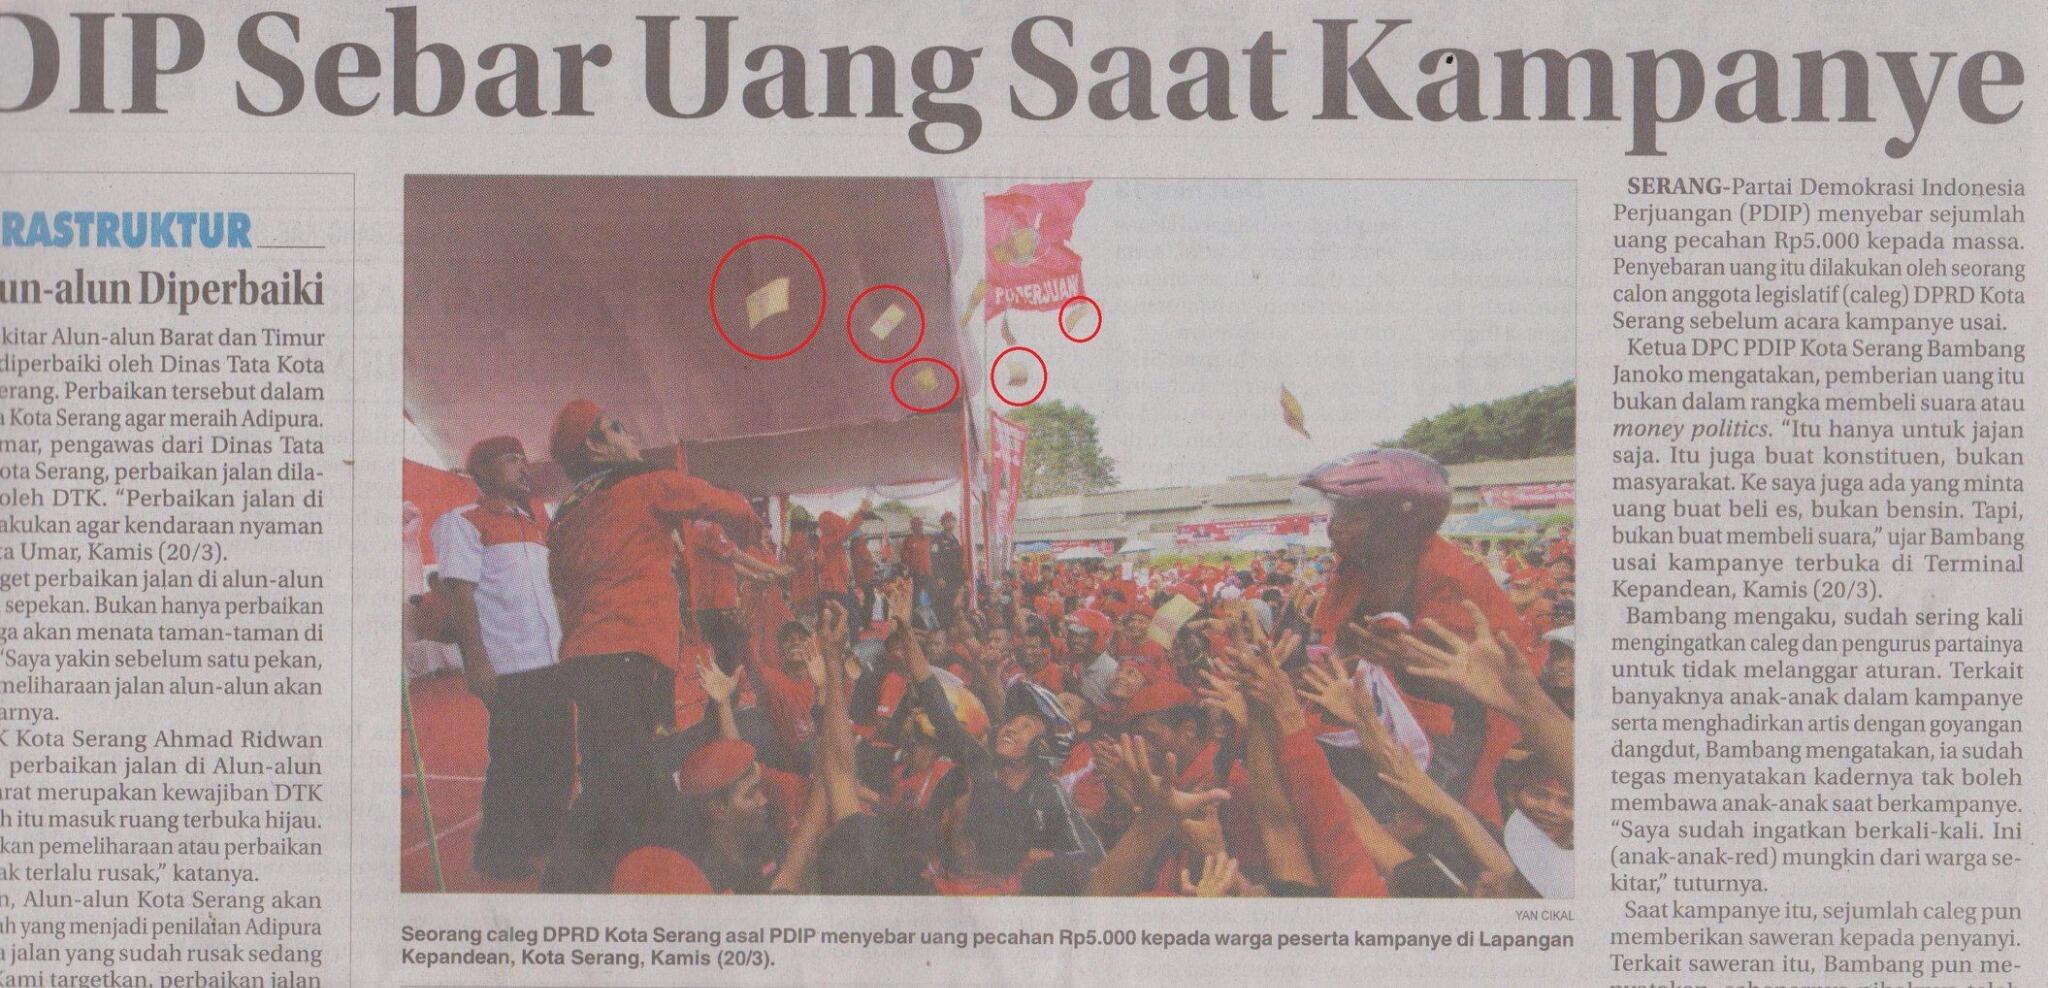 DAFTAR PARTAI TERKORUP SE-INDONESIA RAYA (jangan coblos partai korupsi)